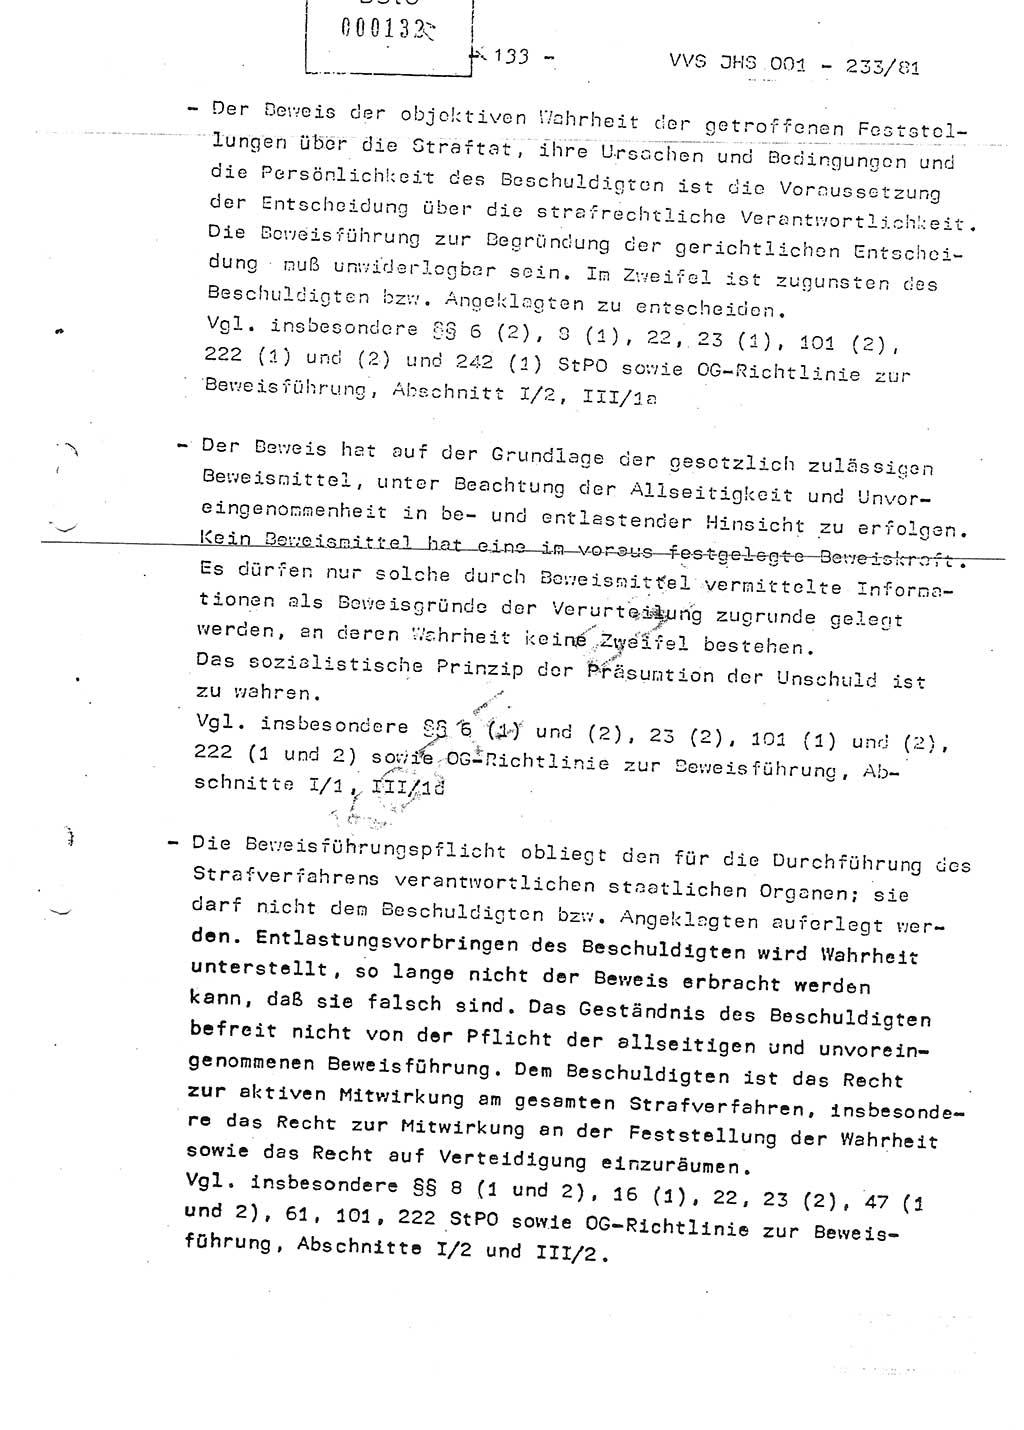 Dissertation Oberstleutnant Horst Zank (JHS), Oberstleutnant Dr. Karl-Heinz Knoblauch (JHS), Oberstleutnant Gustav-Adolf Kowalewski (HA Ⅸ), Oberstleutnant Wolfgang Plötner (HA Ⅸ), Ministerium für Staatssicherheit (MfS) [Deutsche Demokratische Republik (DDR)], Juristische Hochschule (JHS), Vertrauliche Verschlußsache (VVS) o001-233/81, Potsdam 1981, Blatt 133 (Diss. MfS DDR JHS VVS o001-233/81 1981, Bl. 133)